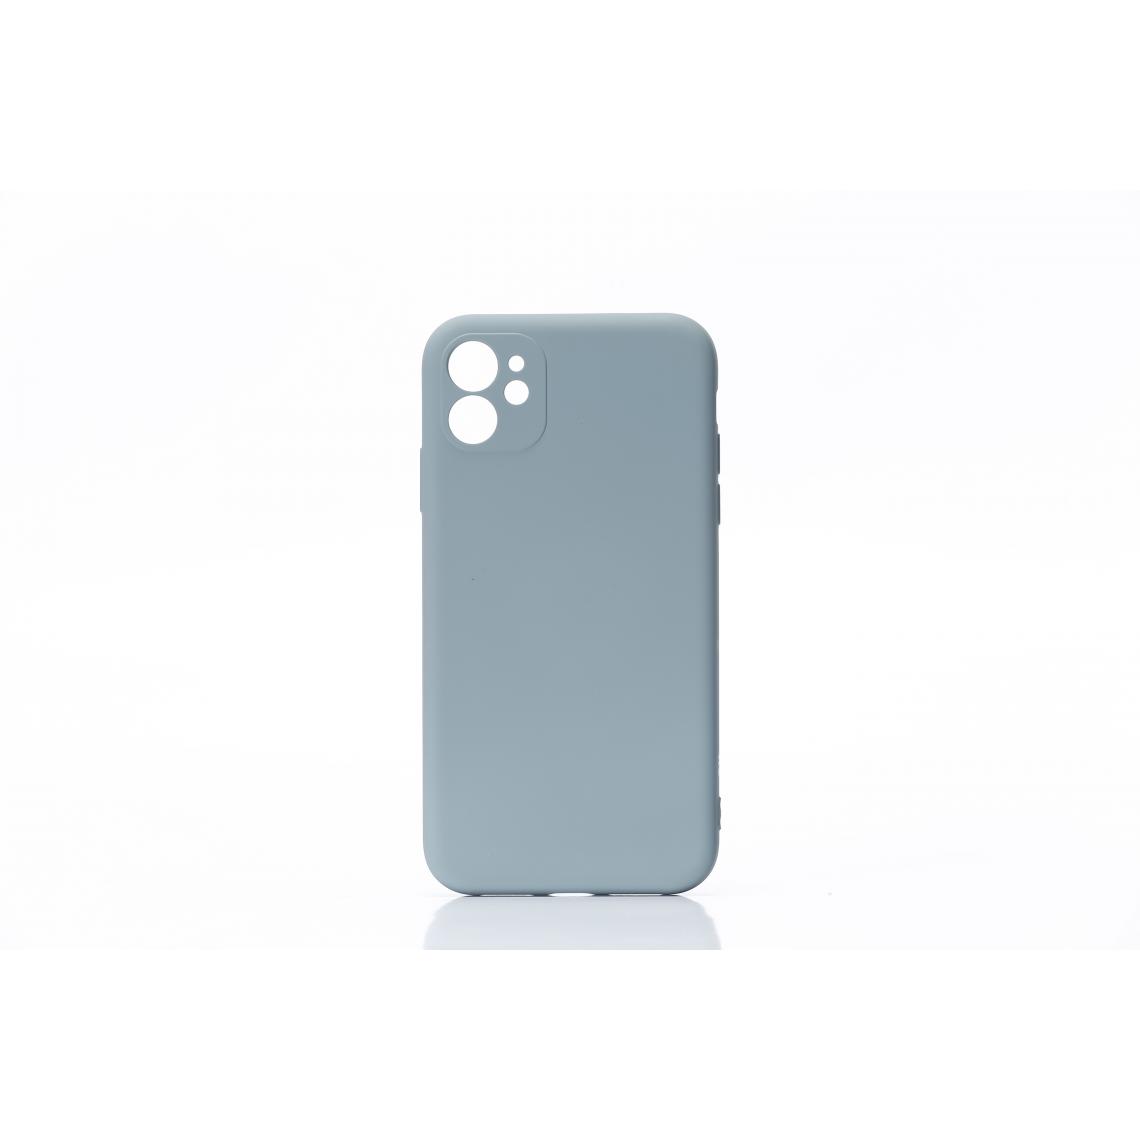 We - WE Coque de protection ulta-fine et souple pour smartphone APPLE iPhone 12. Douce au toucher. Protège des chocs et rayures. Rose poudré - Coque, étui smartphone